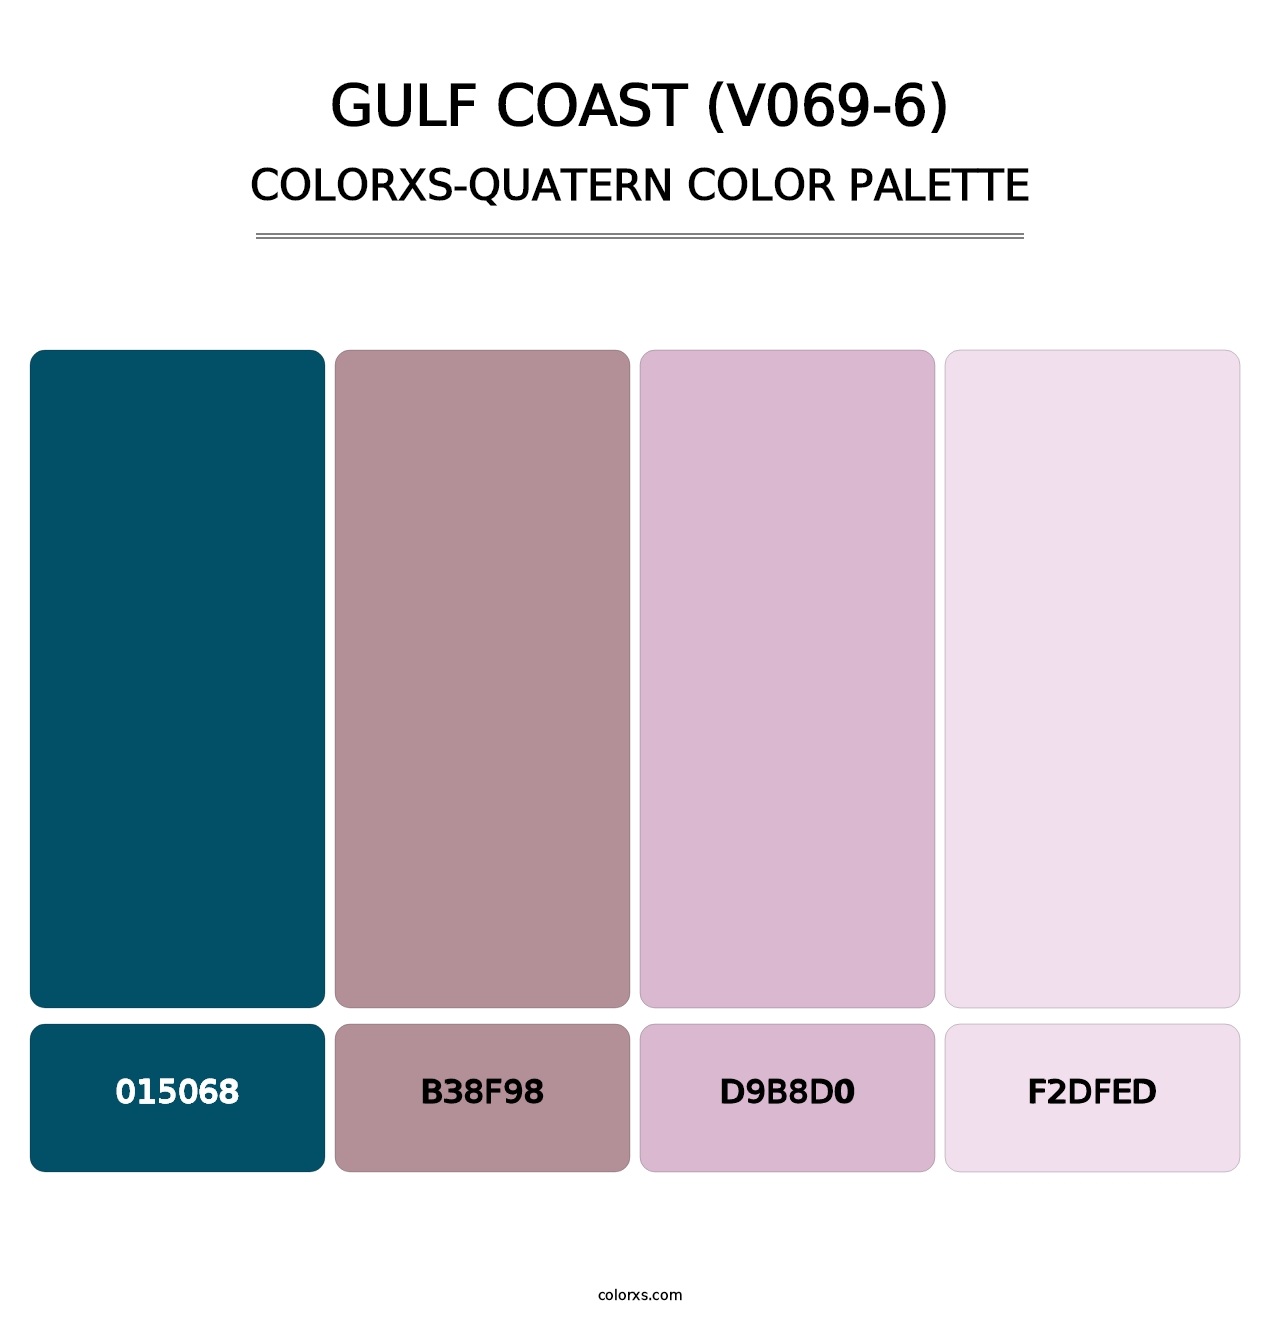 Gulf Coast (V069-6) - Colorxs Quatern Palette